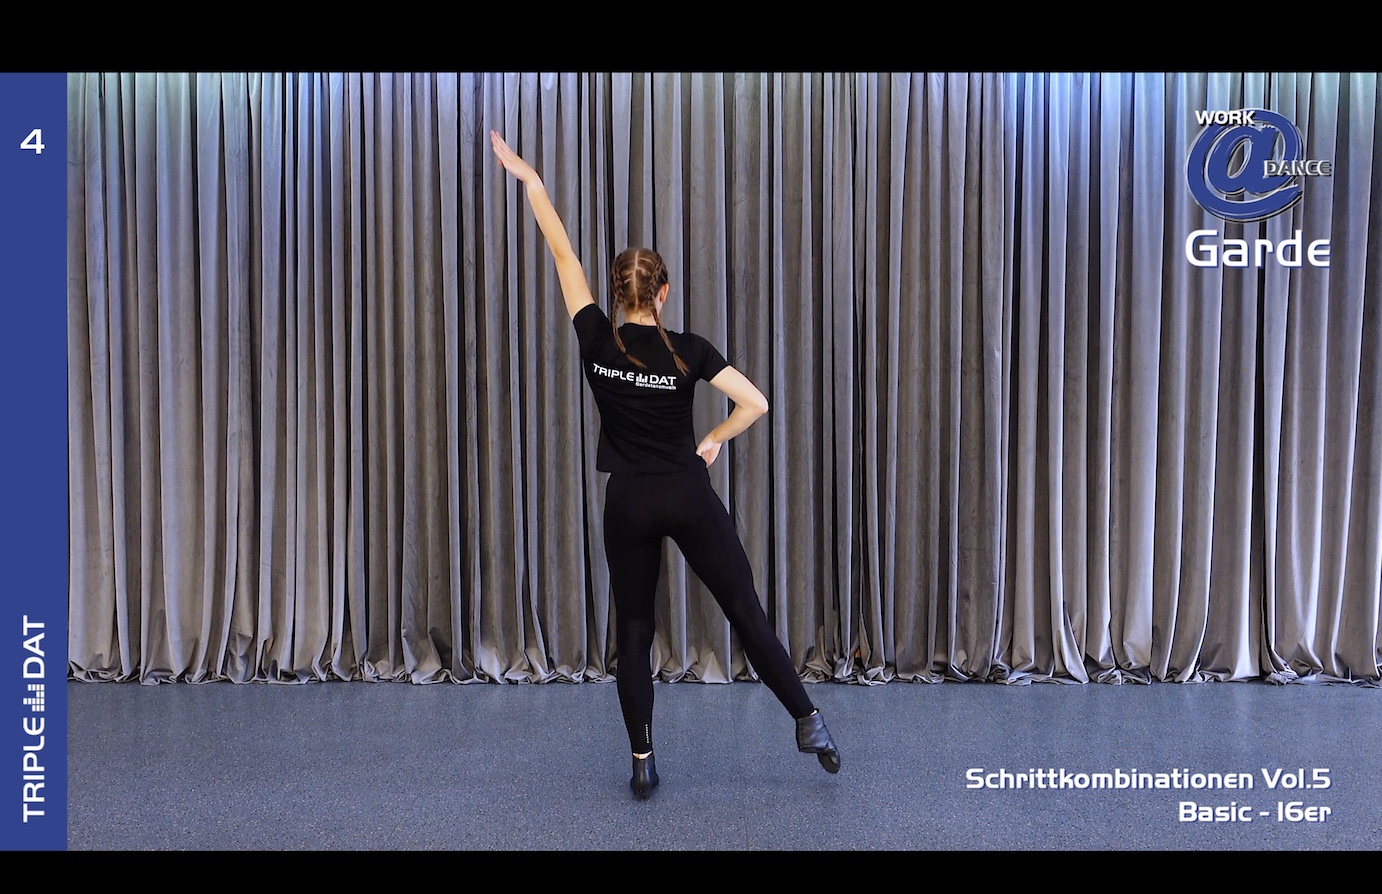 Work@Dance Garde Schrittkombinationen 05 - Basic